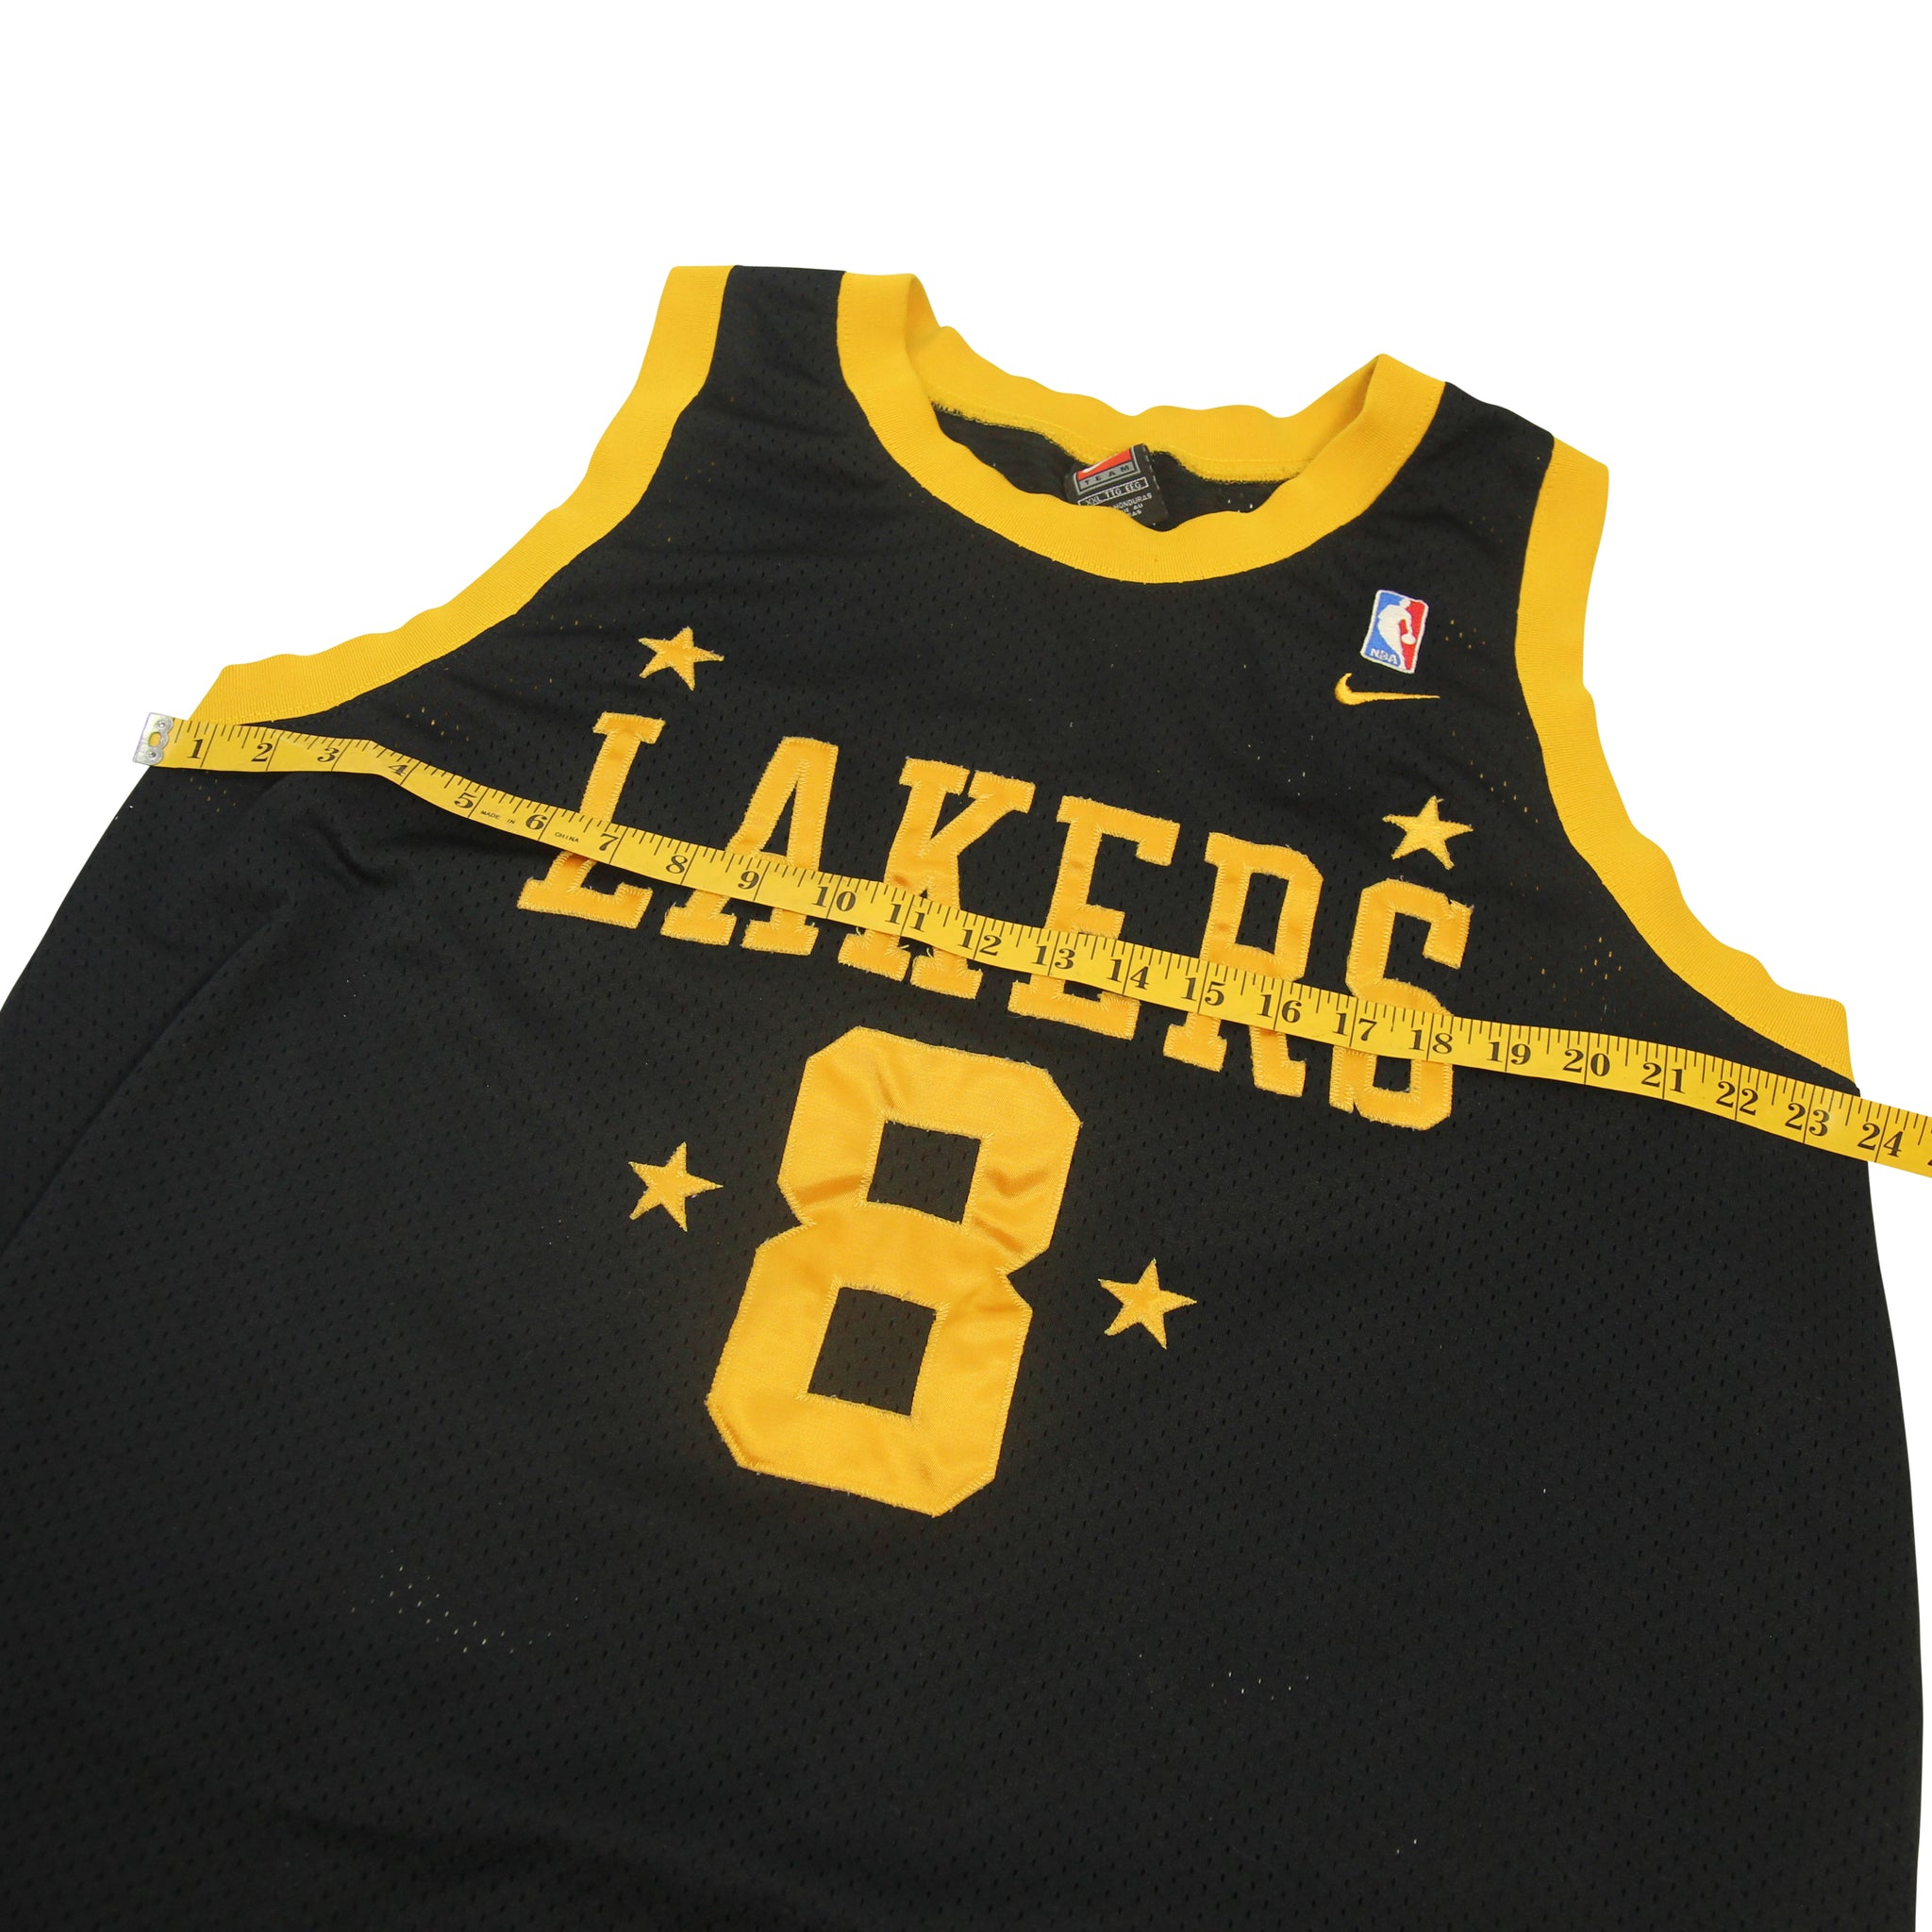 Vintage Nike NBA Los Angeles Lakers Kobe Bryant Basketball 